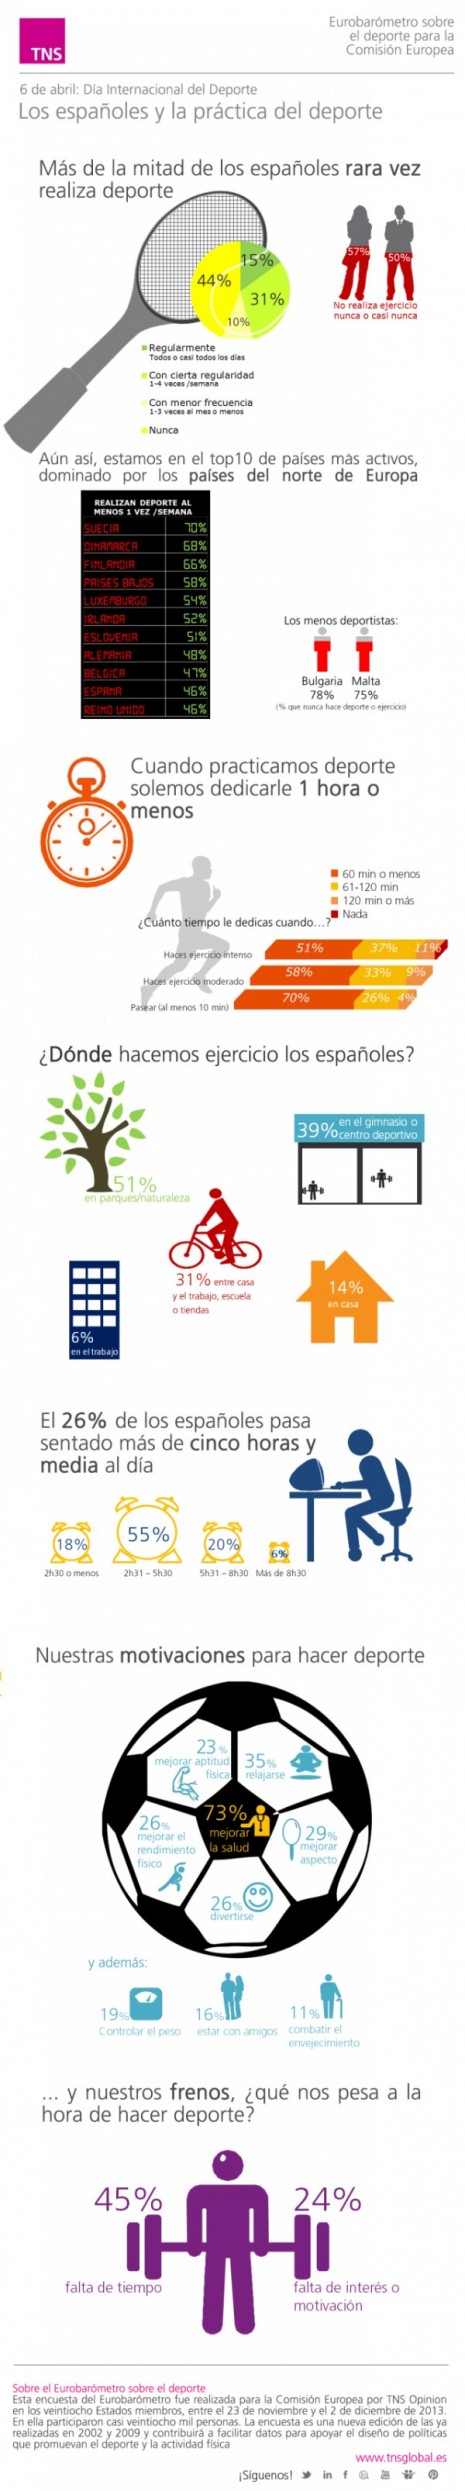 infografia_espanoles_y_deporte